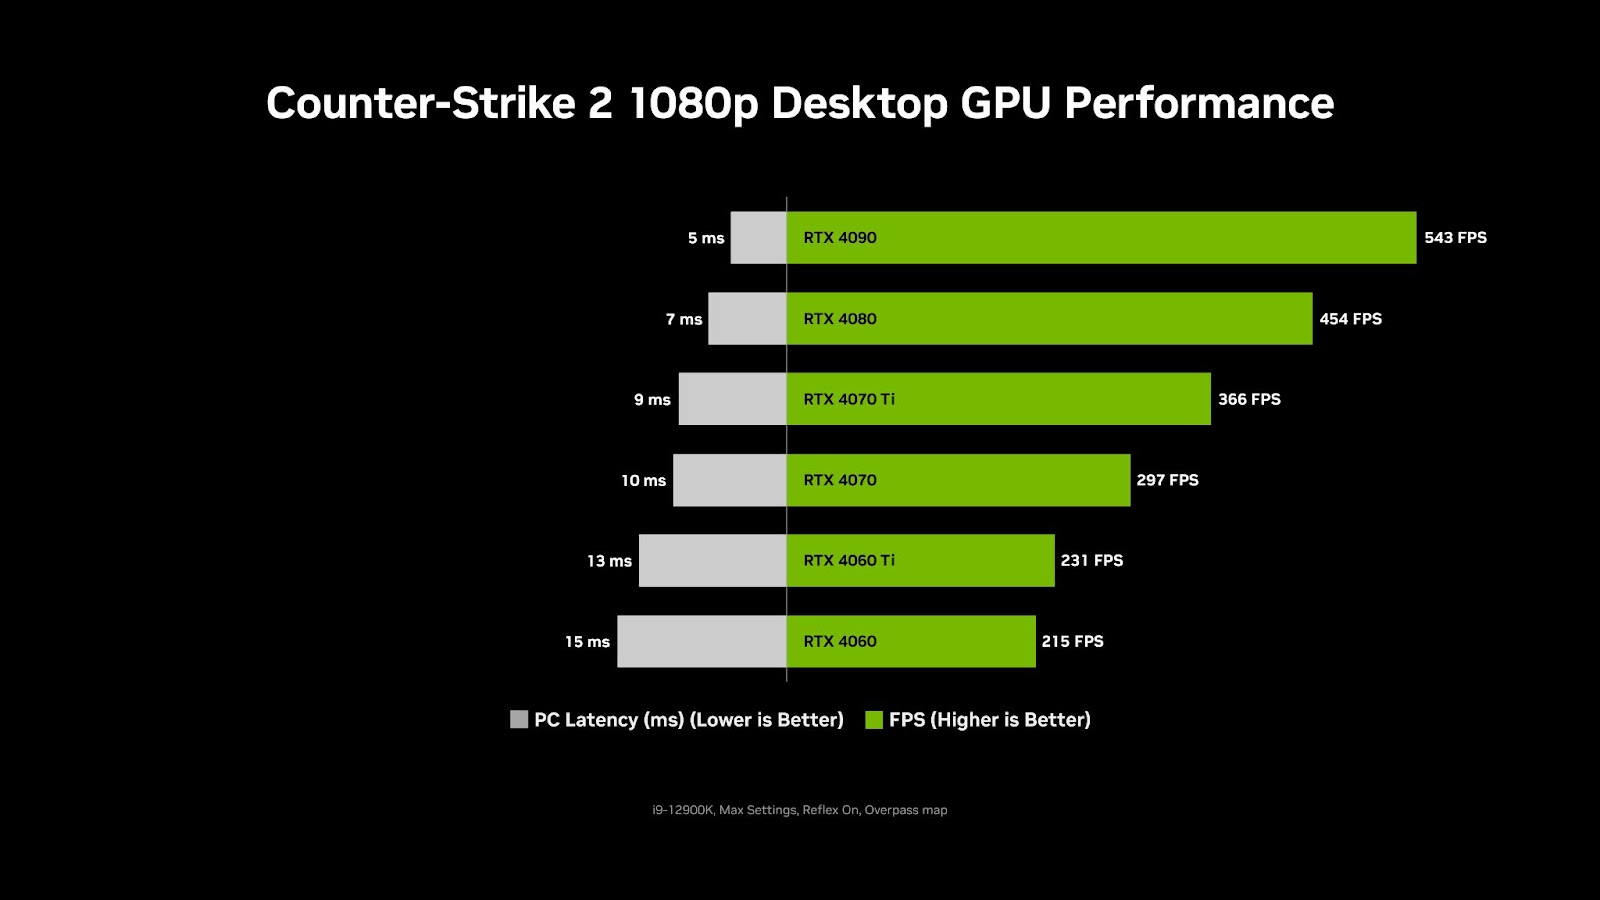 NVIDIA Reflex optimiza la latencia en Counter-Strike 2